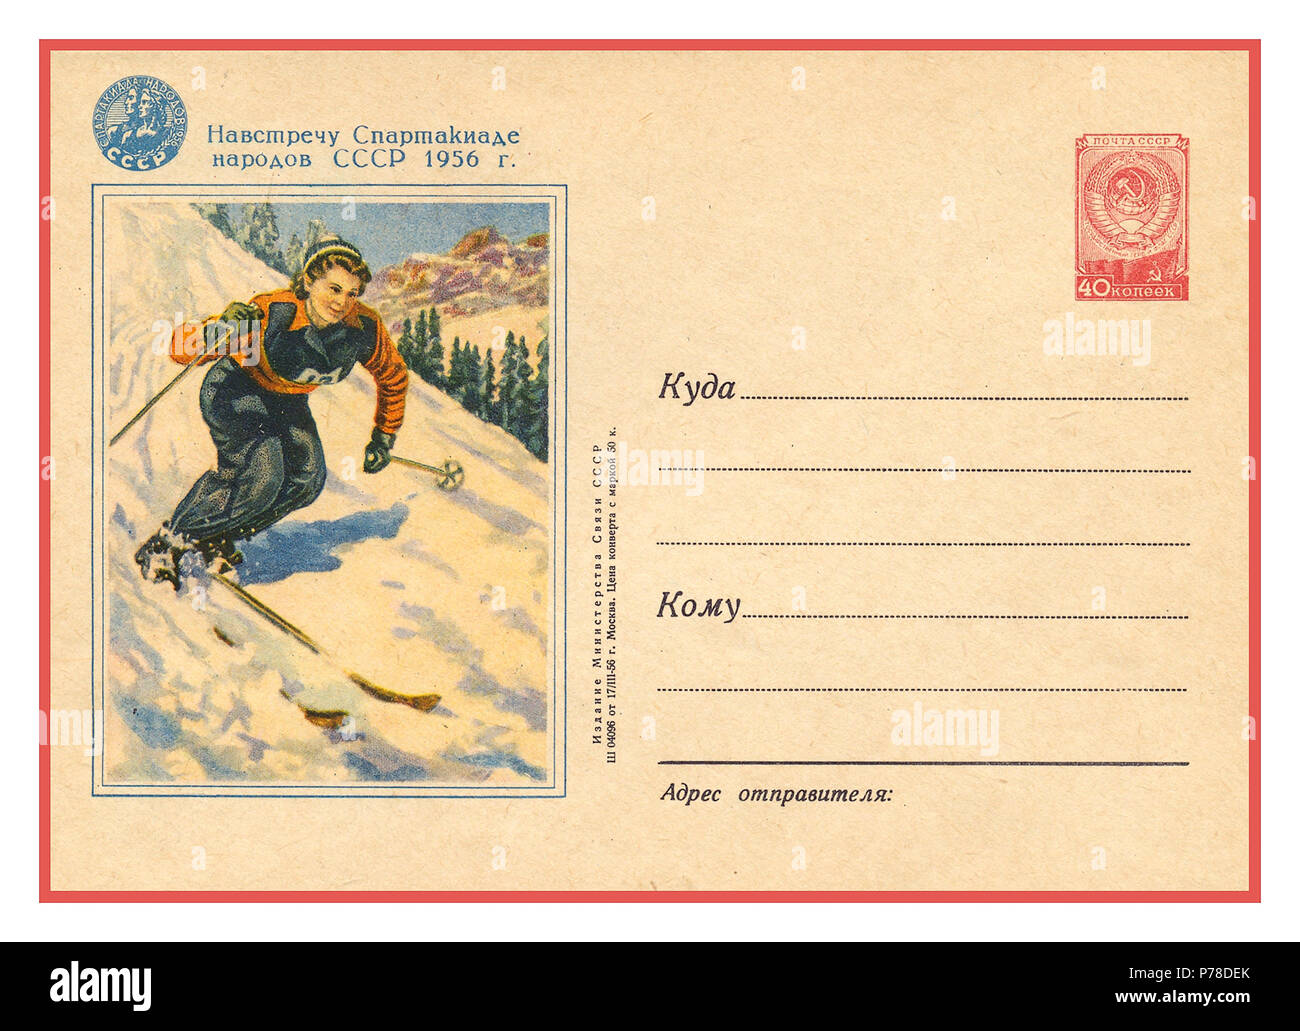 Jeux Olympiques d'hiver de 1956 Vintage Postcard célébrant CCCP Russie participation activités sportives, illustration avec timbre soviétique URSS CCCP Banque D'Images